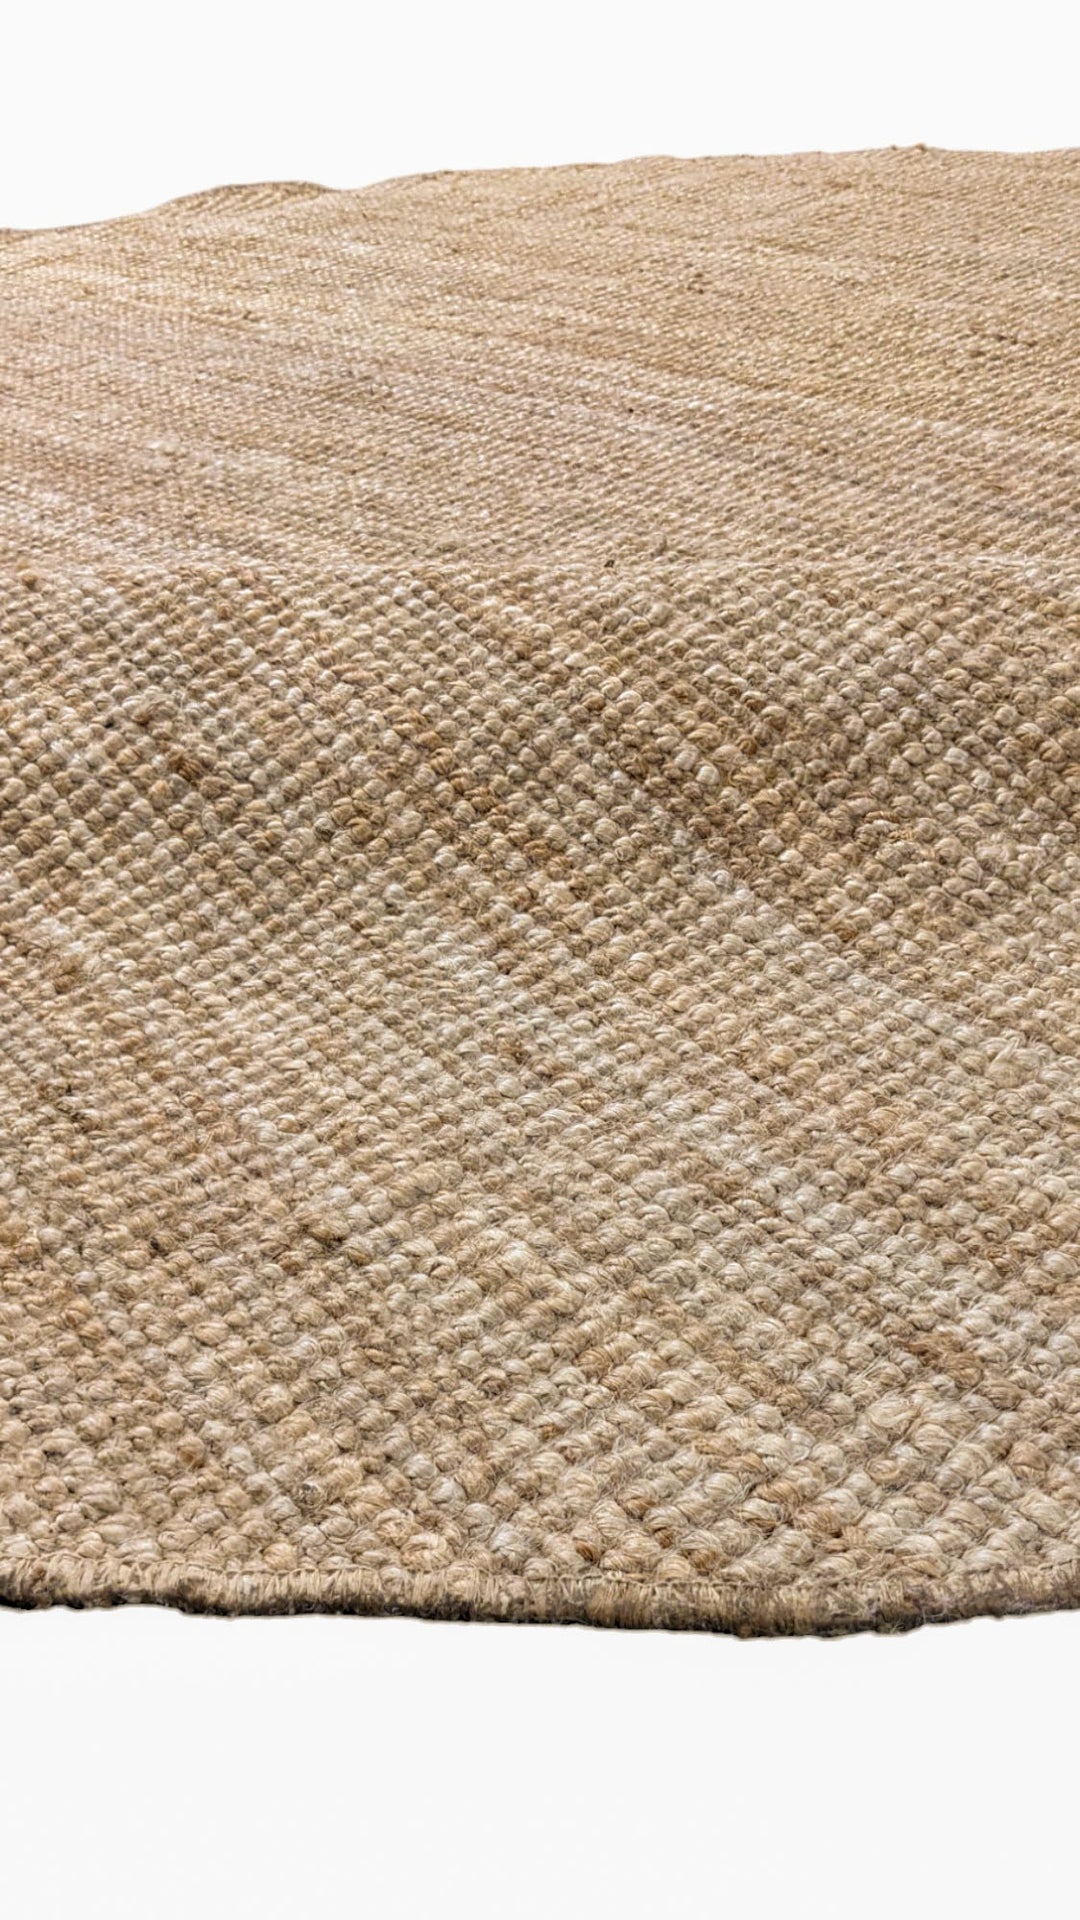 Knots - Size: 7.4 x 7.4 - Imam Carpet Co